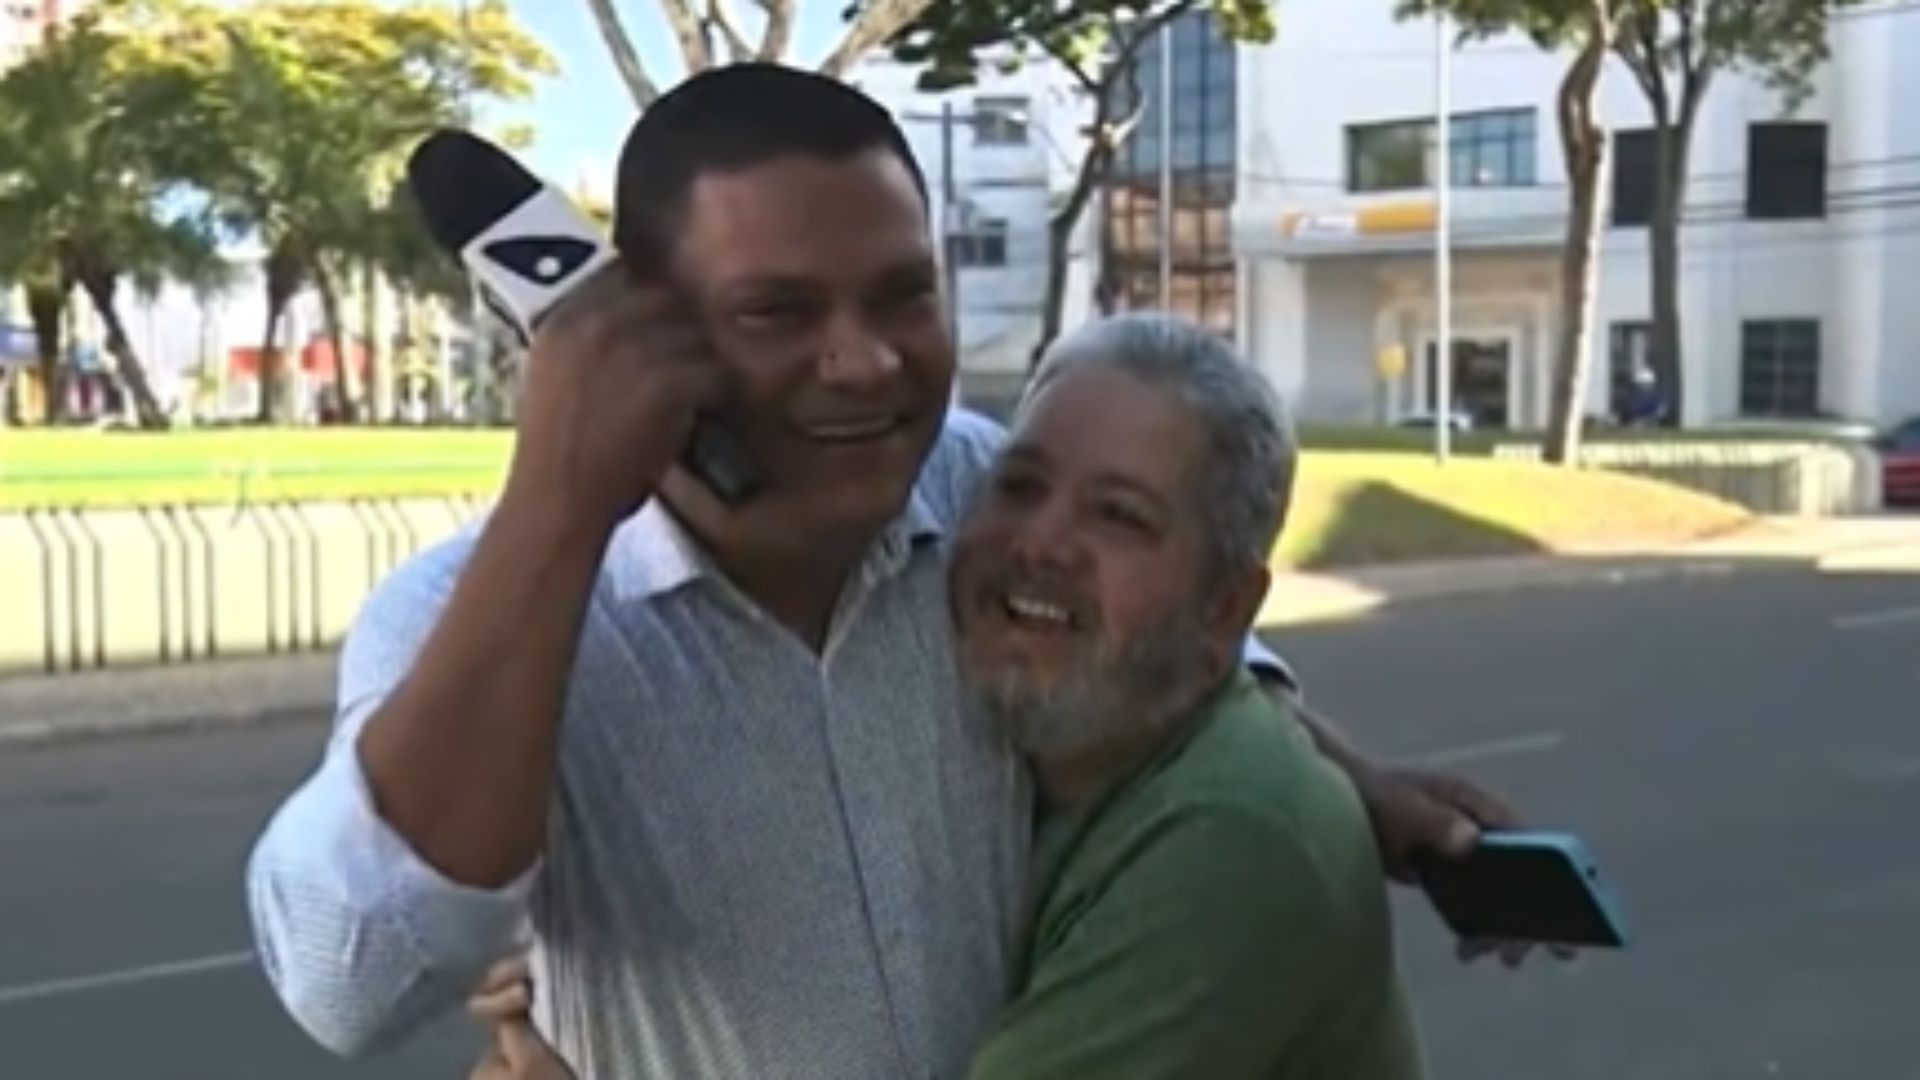 Telespectador abordou o repórter Tiago Félix e começou a cantar durante participação no Bom Dia ES. Jornalista relatou outras situações parecidas